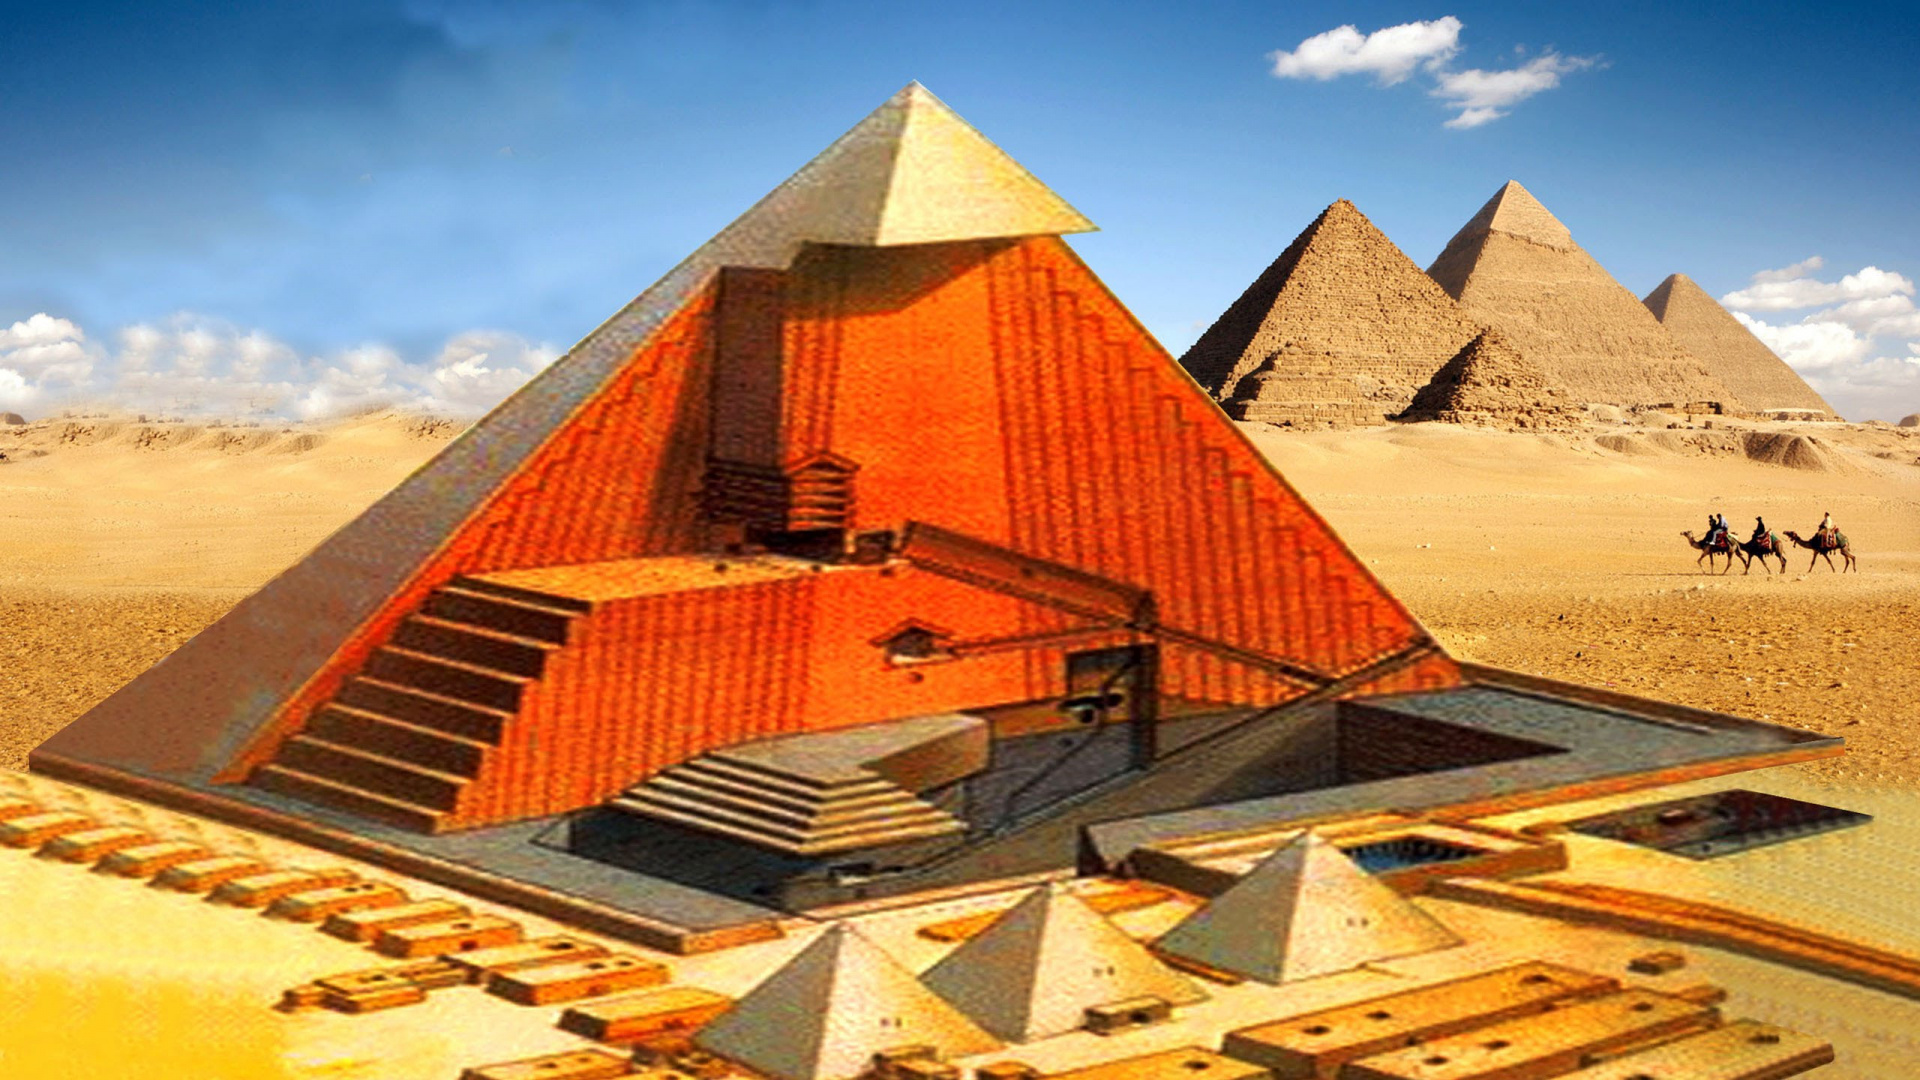 金字塔, 埃及金字塔, 里程碑, 纪念碑, 历史站 壁纸 1920x1080 允许